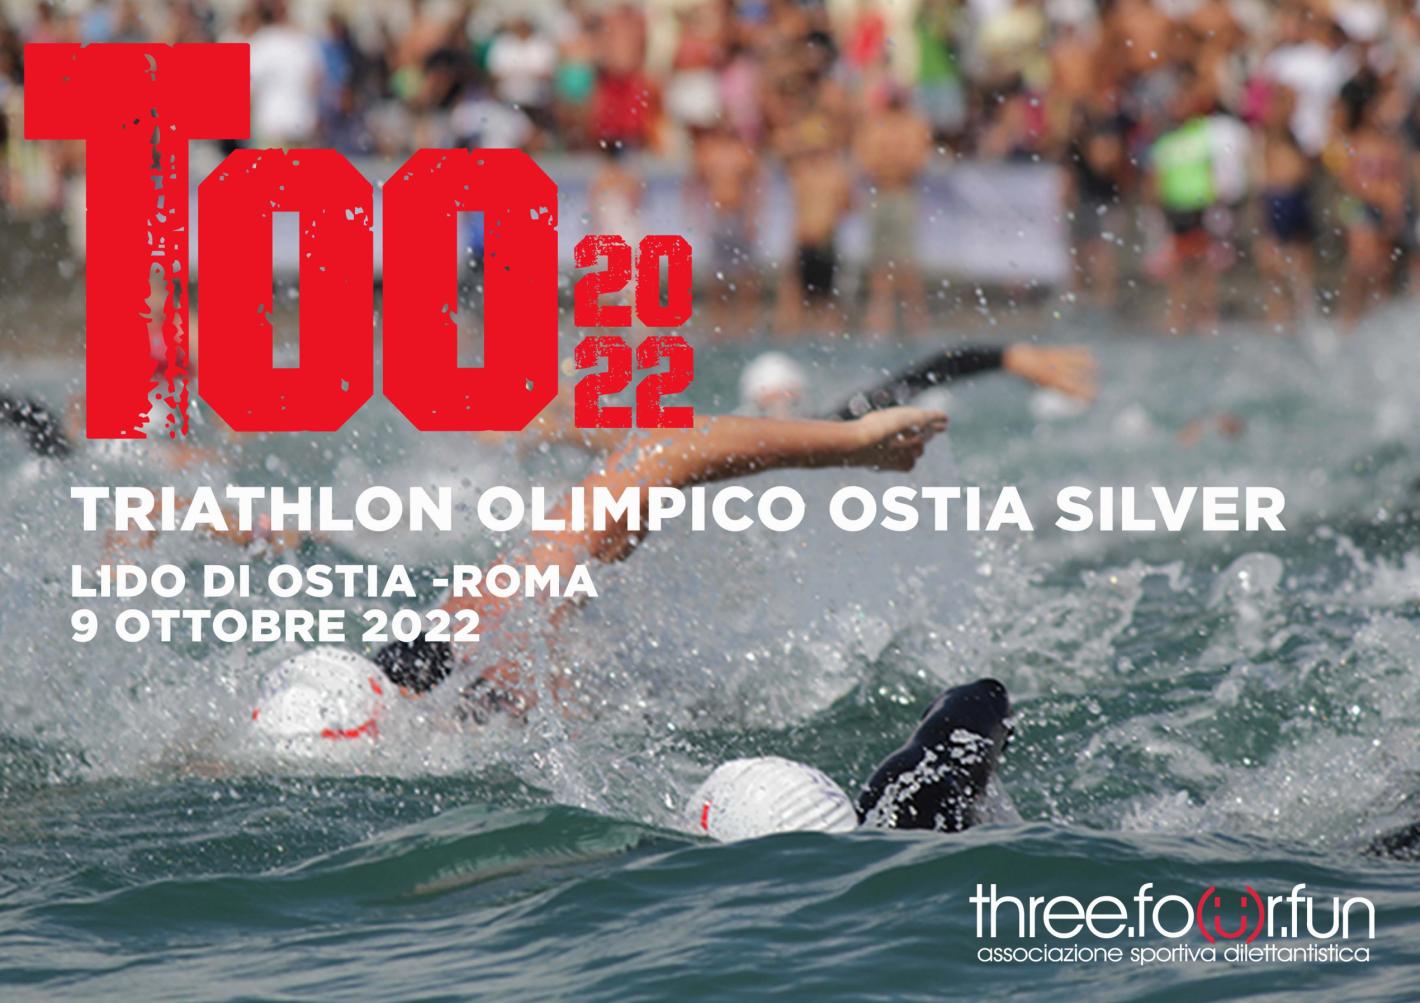 images/2022/Gare_ITALIA/Ostia_Triathlon/medium/FOTO_PER_ARTICOLO_STAMPA_2.jpg